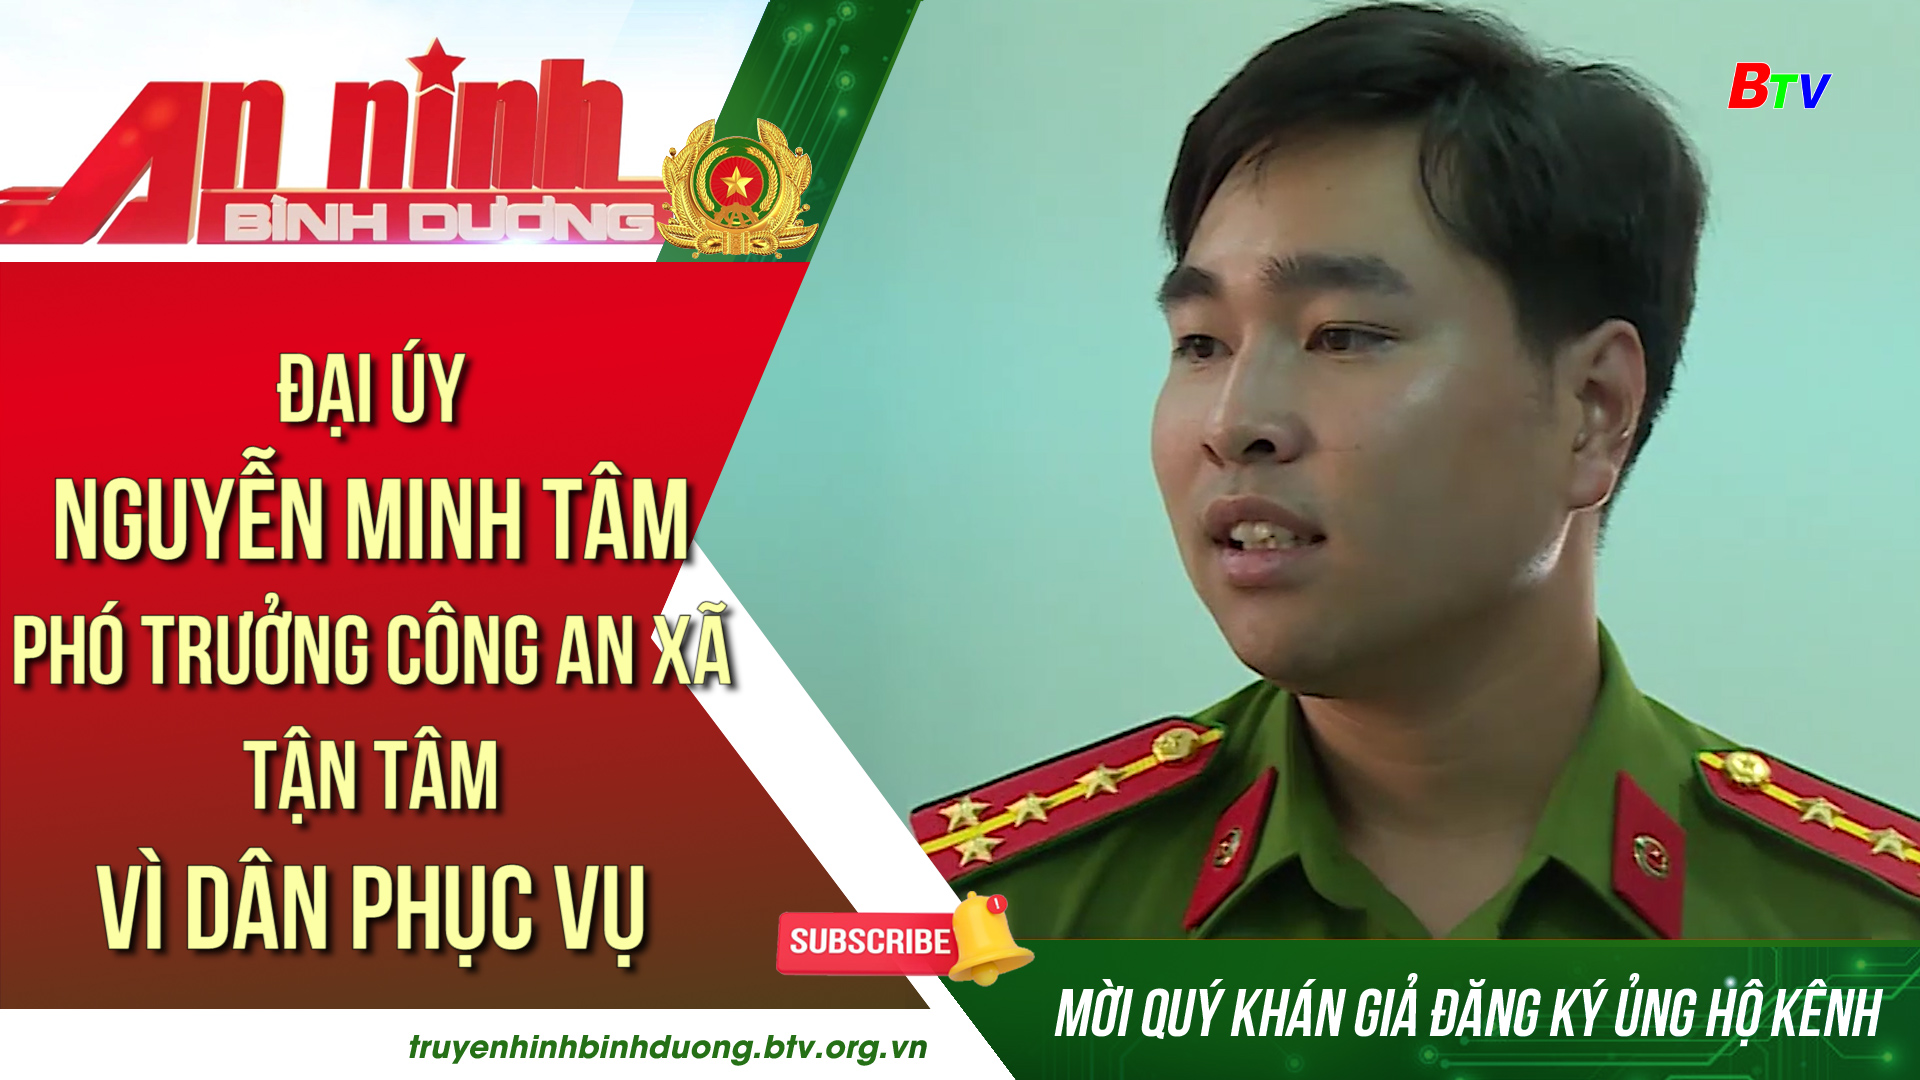 Đại úy Nguyễn Minh Tâm - Phó trưởng công an xã tận tâm vì dân phục vụ